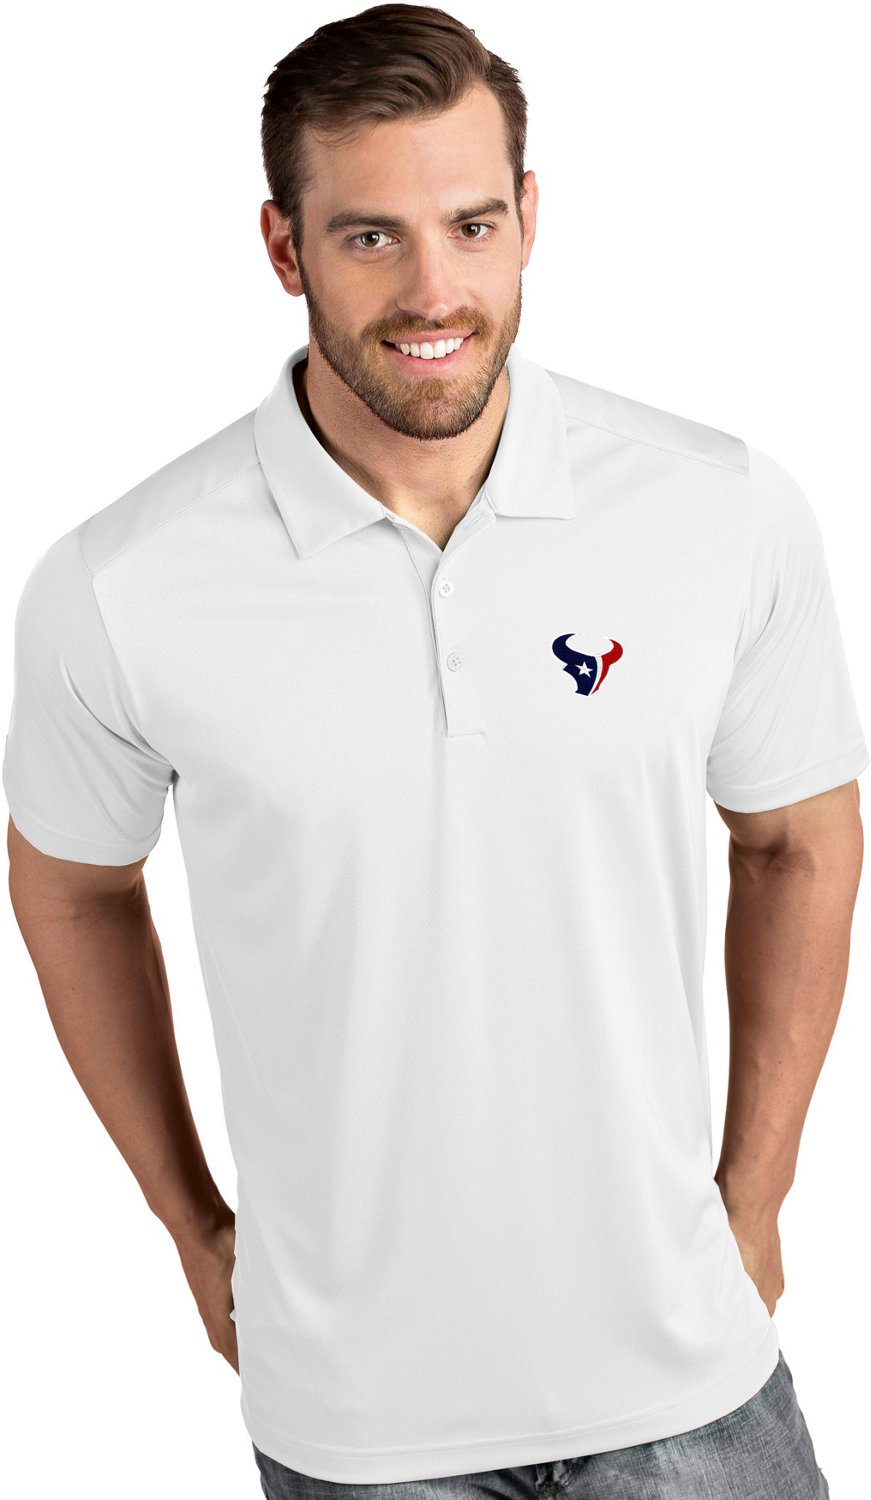 texans polo shirt academy